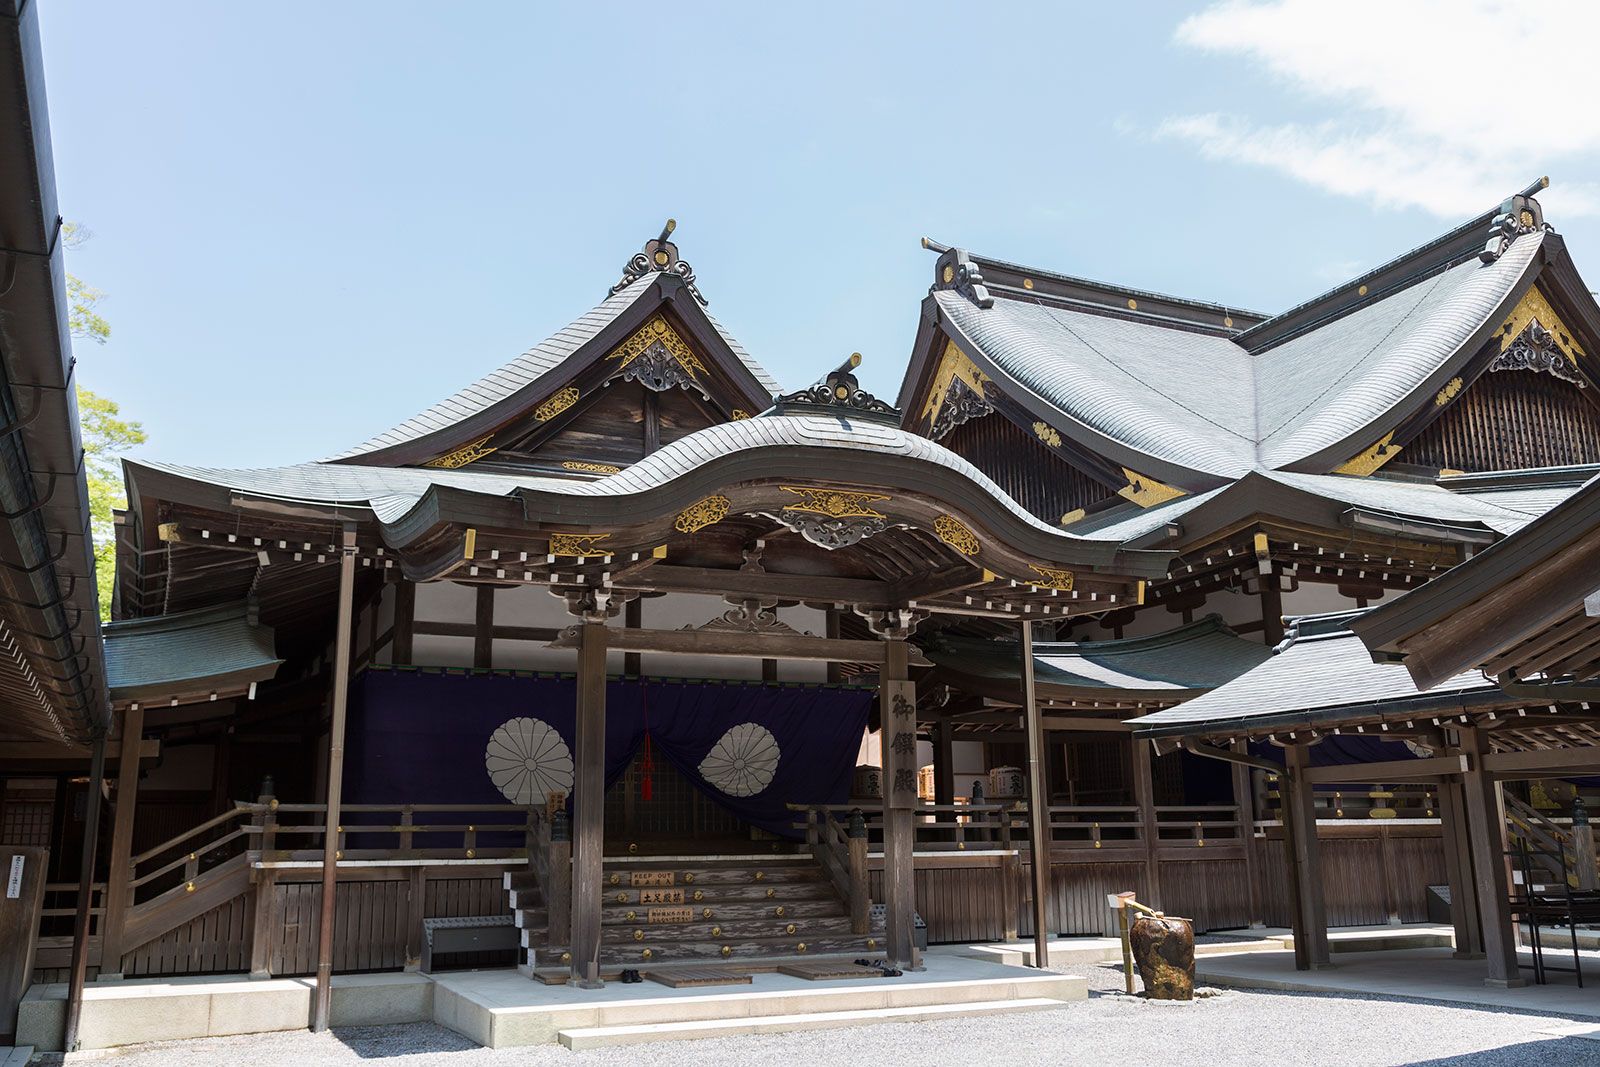 Ise Grand Shrine in Ise, Japan